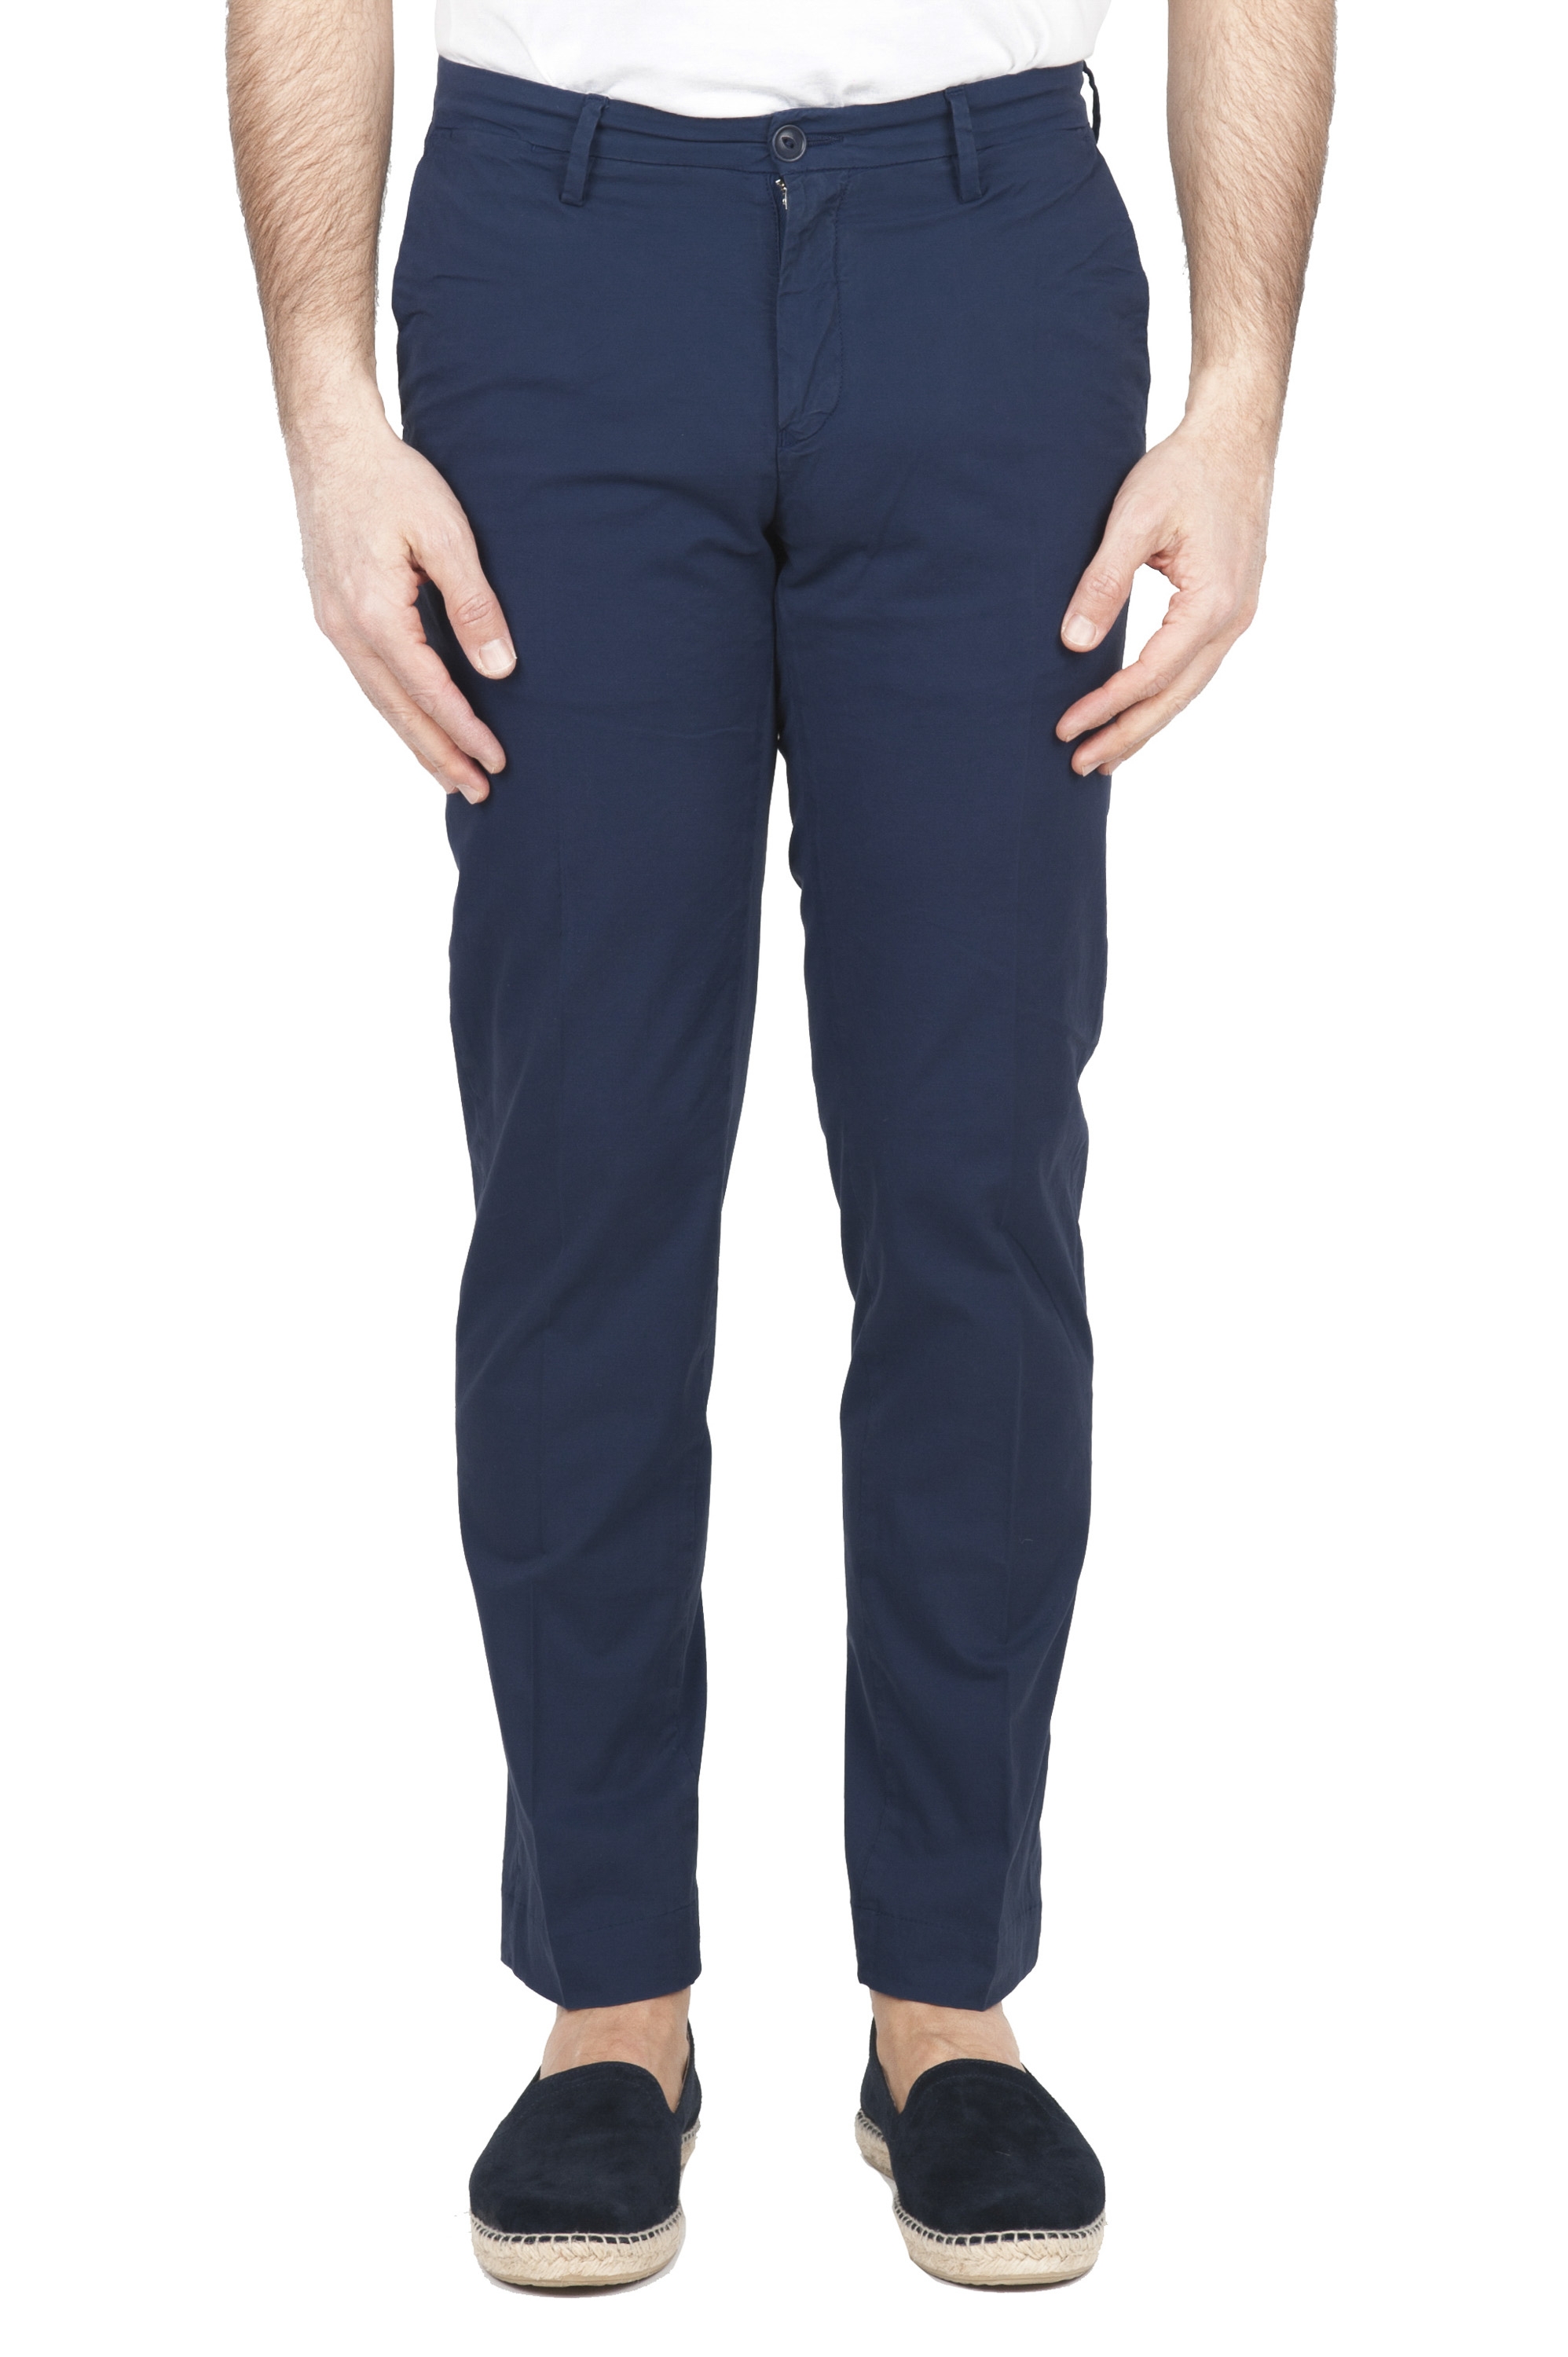 SBU 01684 Pantaloni chino classici in cotone elasticizzato blu navy 01